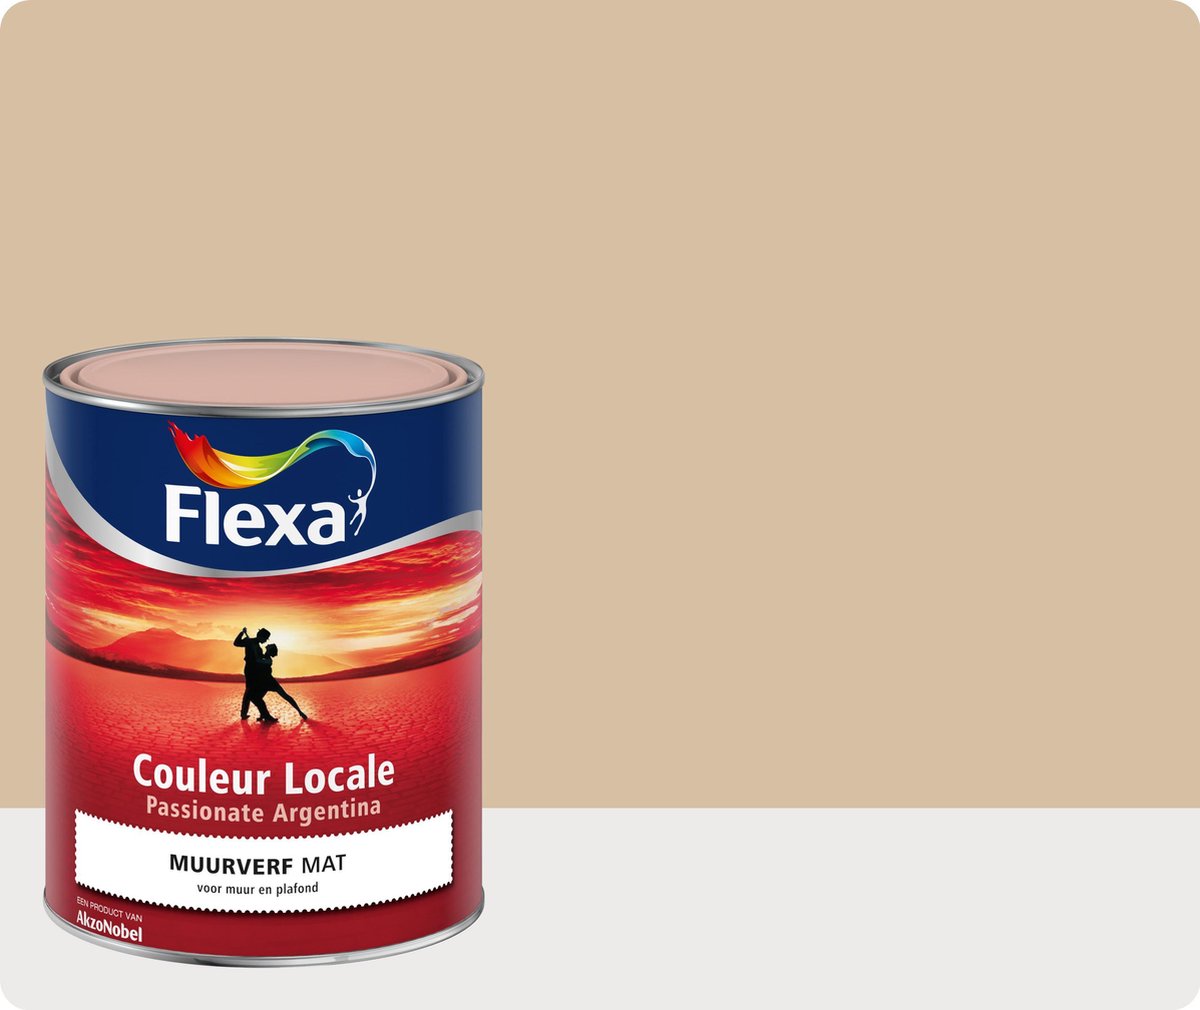 Flexa Couleur Locale - Muurverf Mat - Passionate Argentina Breeze - 7545 - 1 liter